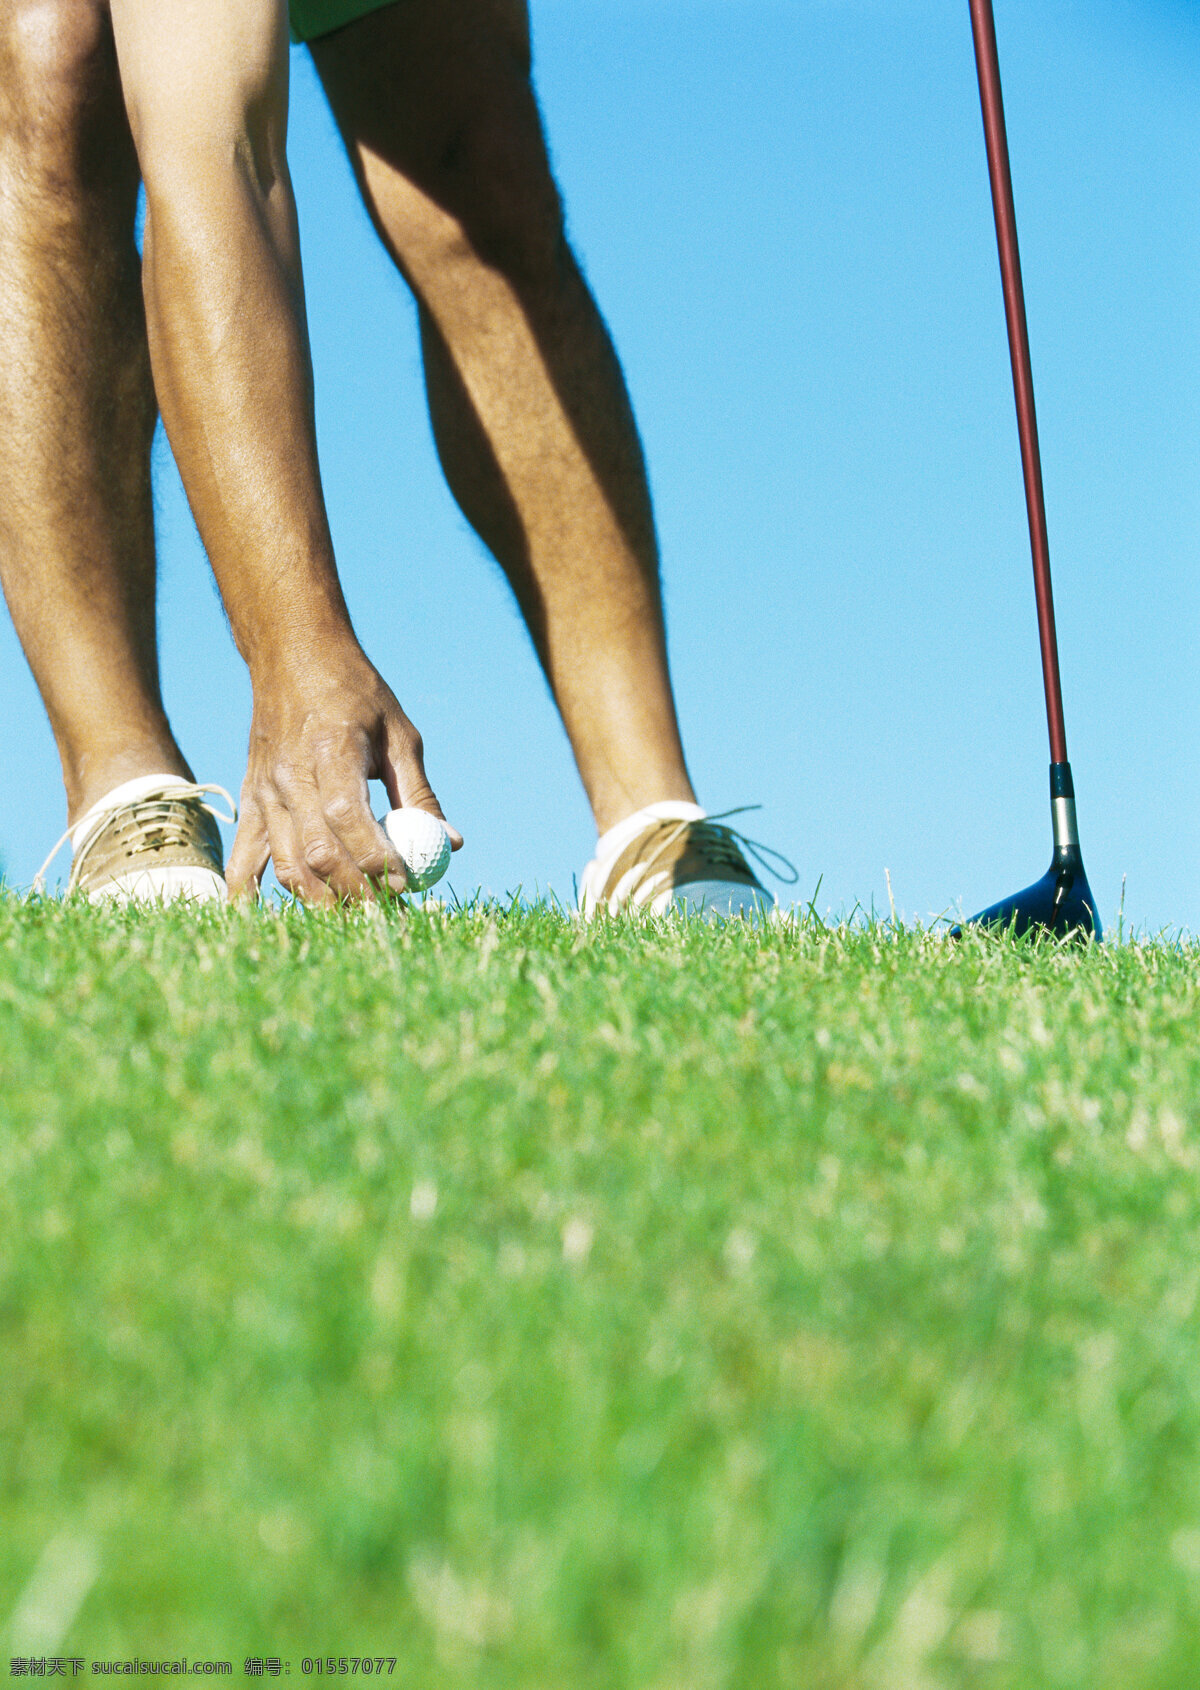 草地 上 固定 好 高尔夫球 球 人物 男士 手势 放球 拿着 高尔夫球棒 绿草地 草坪 高尔夫 休闲 娱乐 体育用品 运动 高清图片 体育运动 生活百科